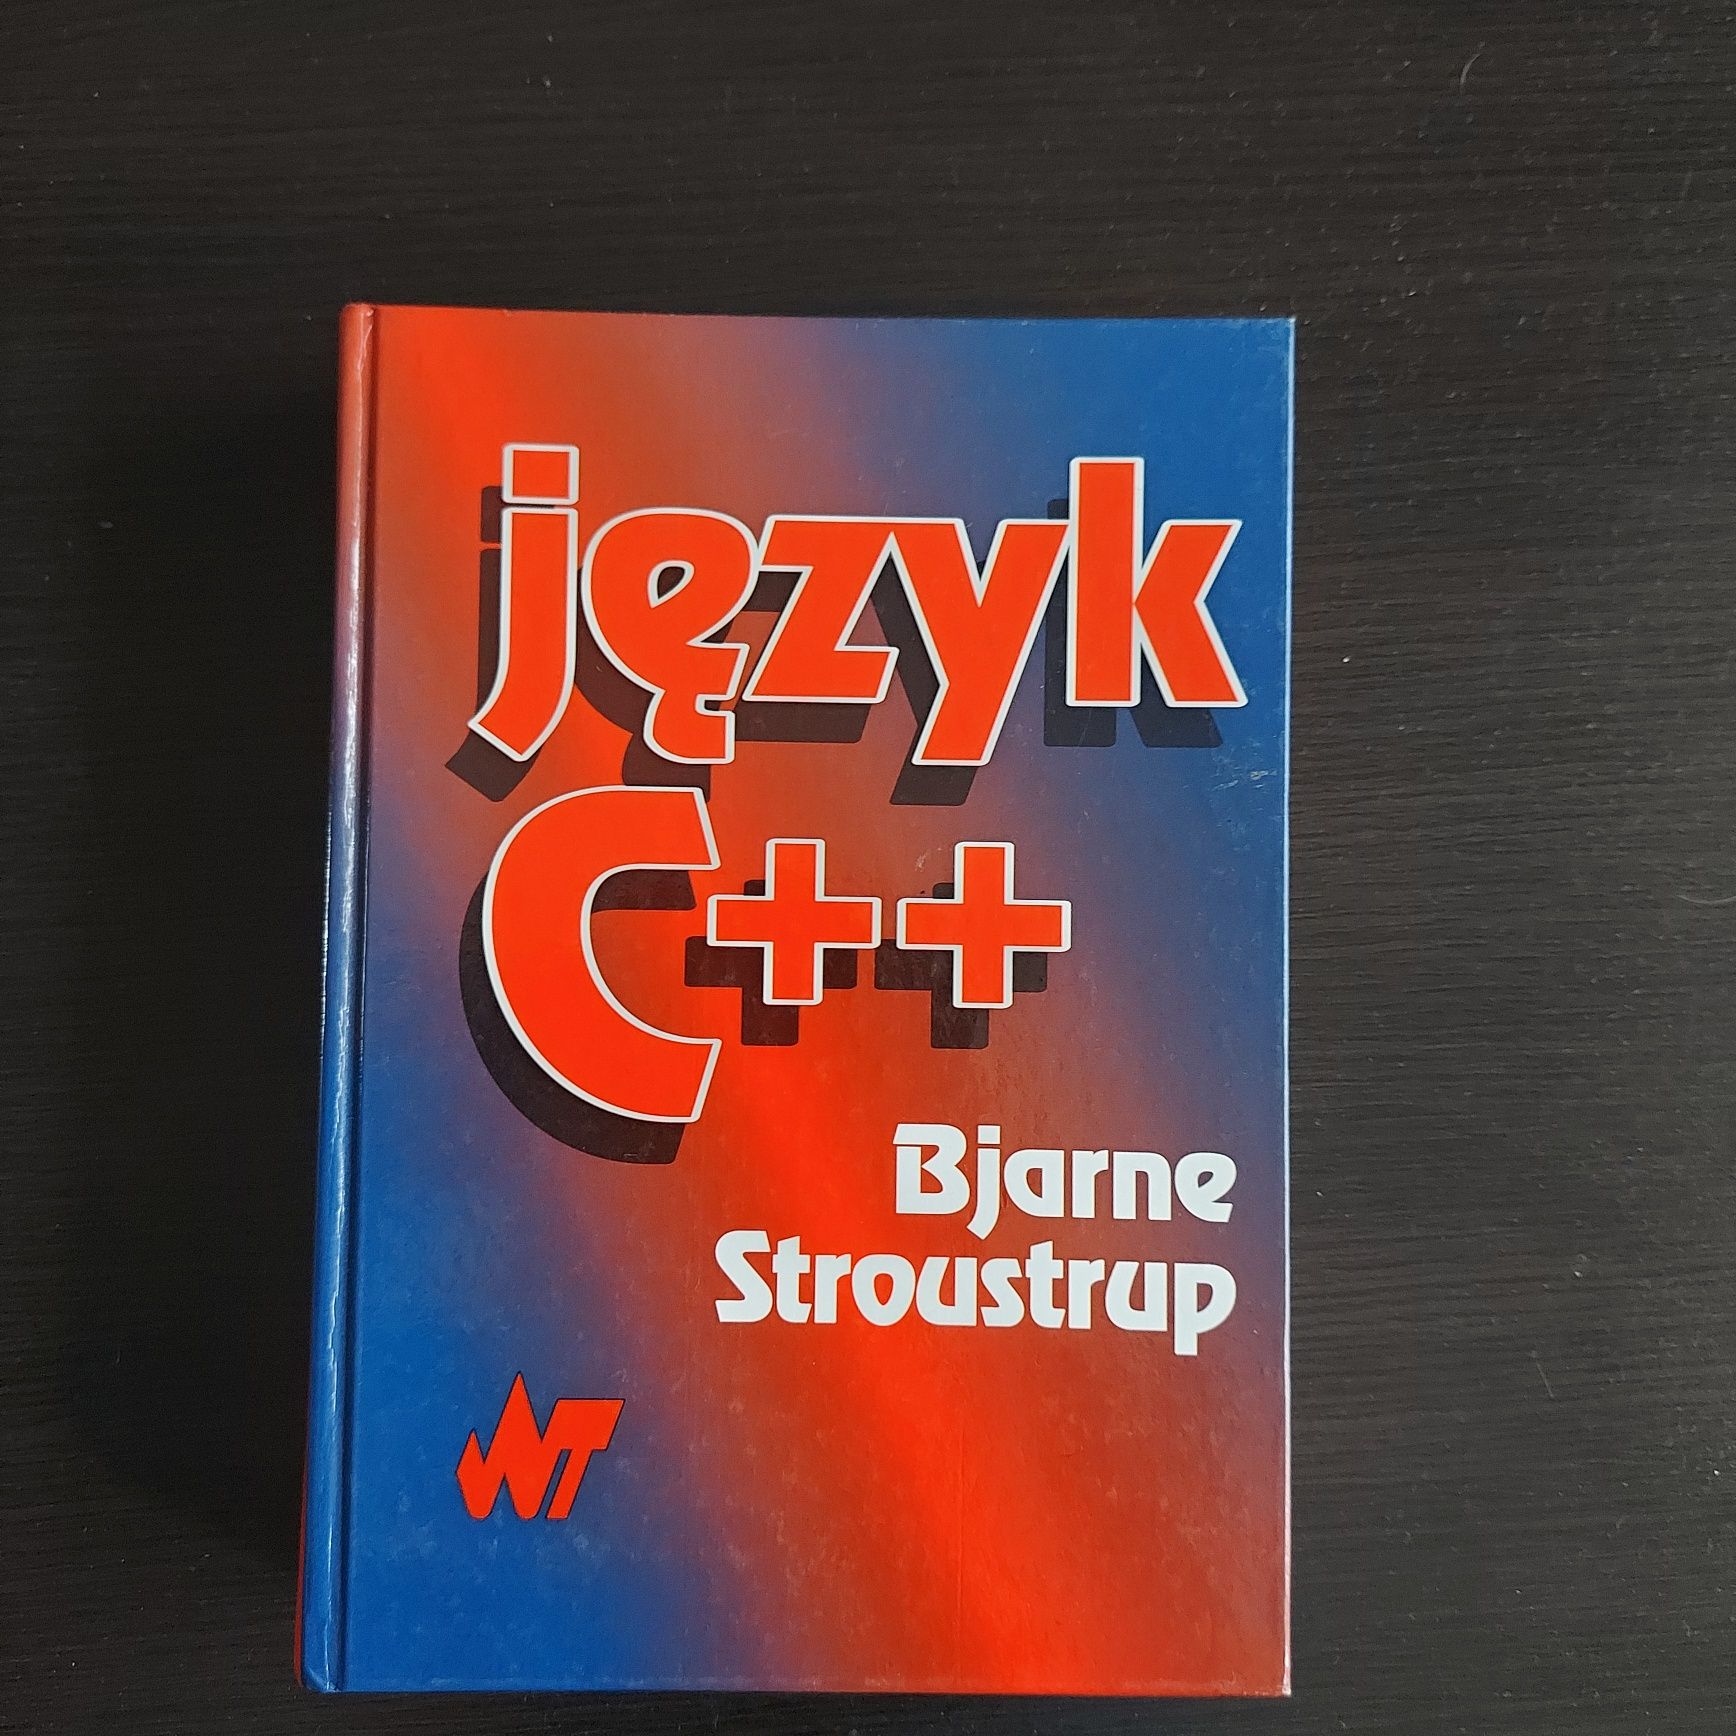 Język C++ Bjarne Stoustrup
Bjarne Stroustrup